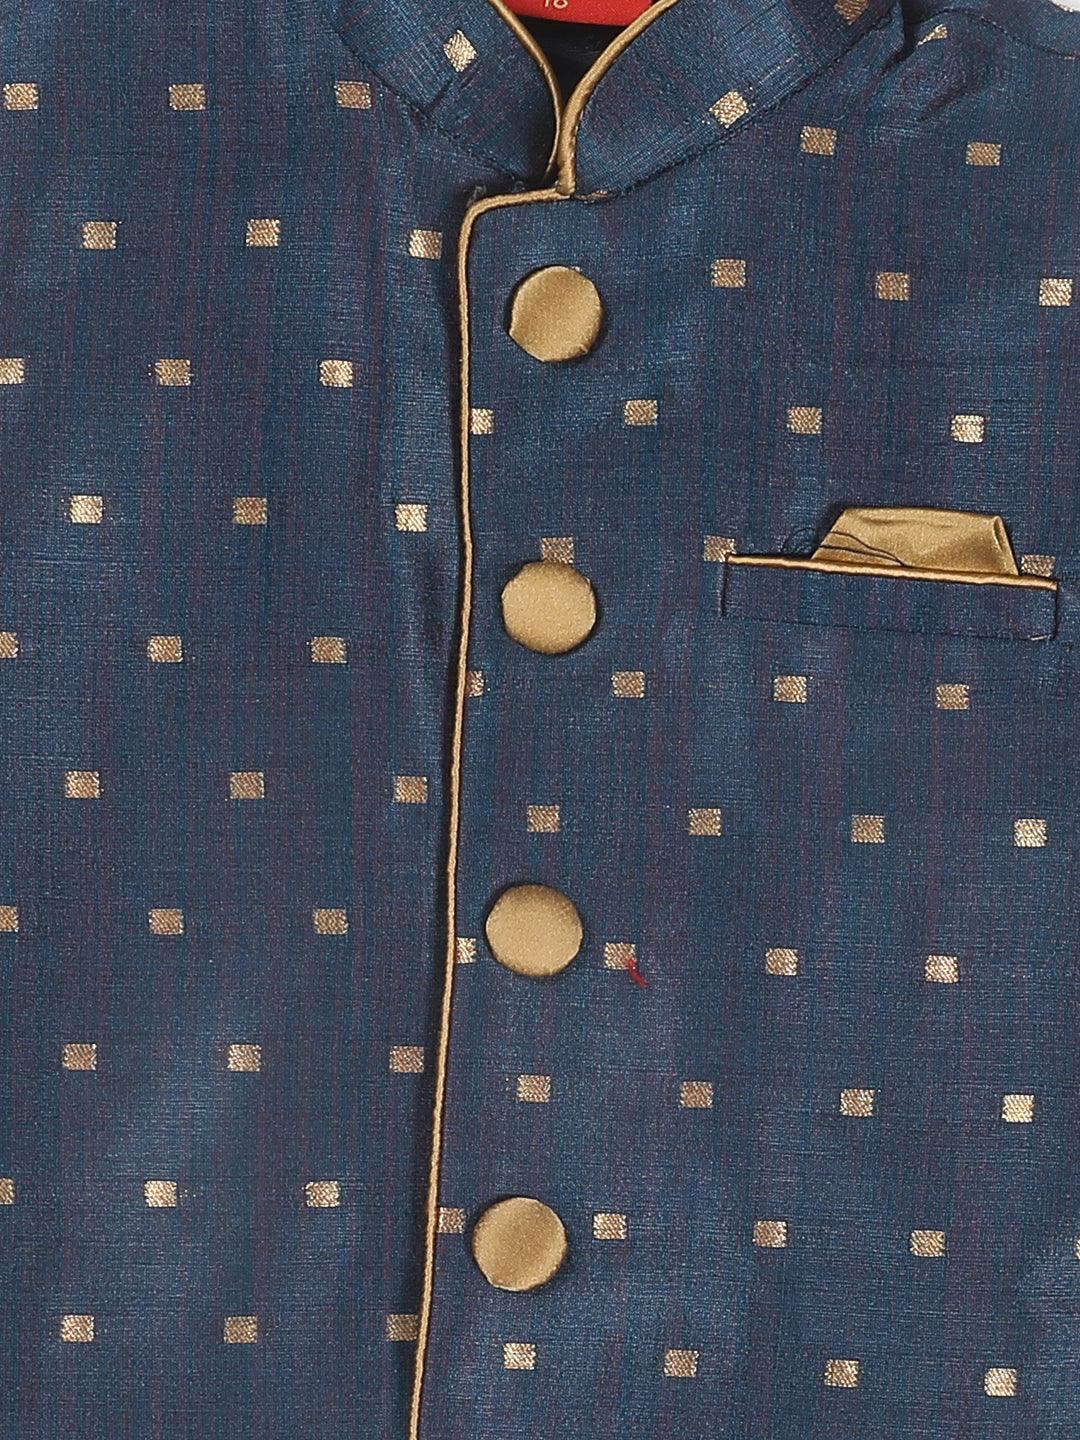 VASTRAMAY SISHU Boy's Rose Gold Kurta Pyjama With Blue Woven Nehru Jacket - Uboric